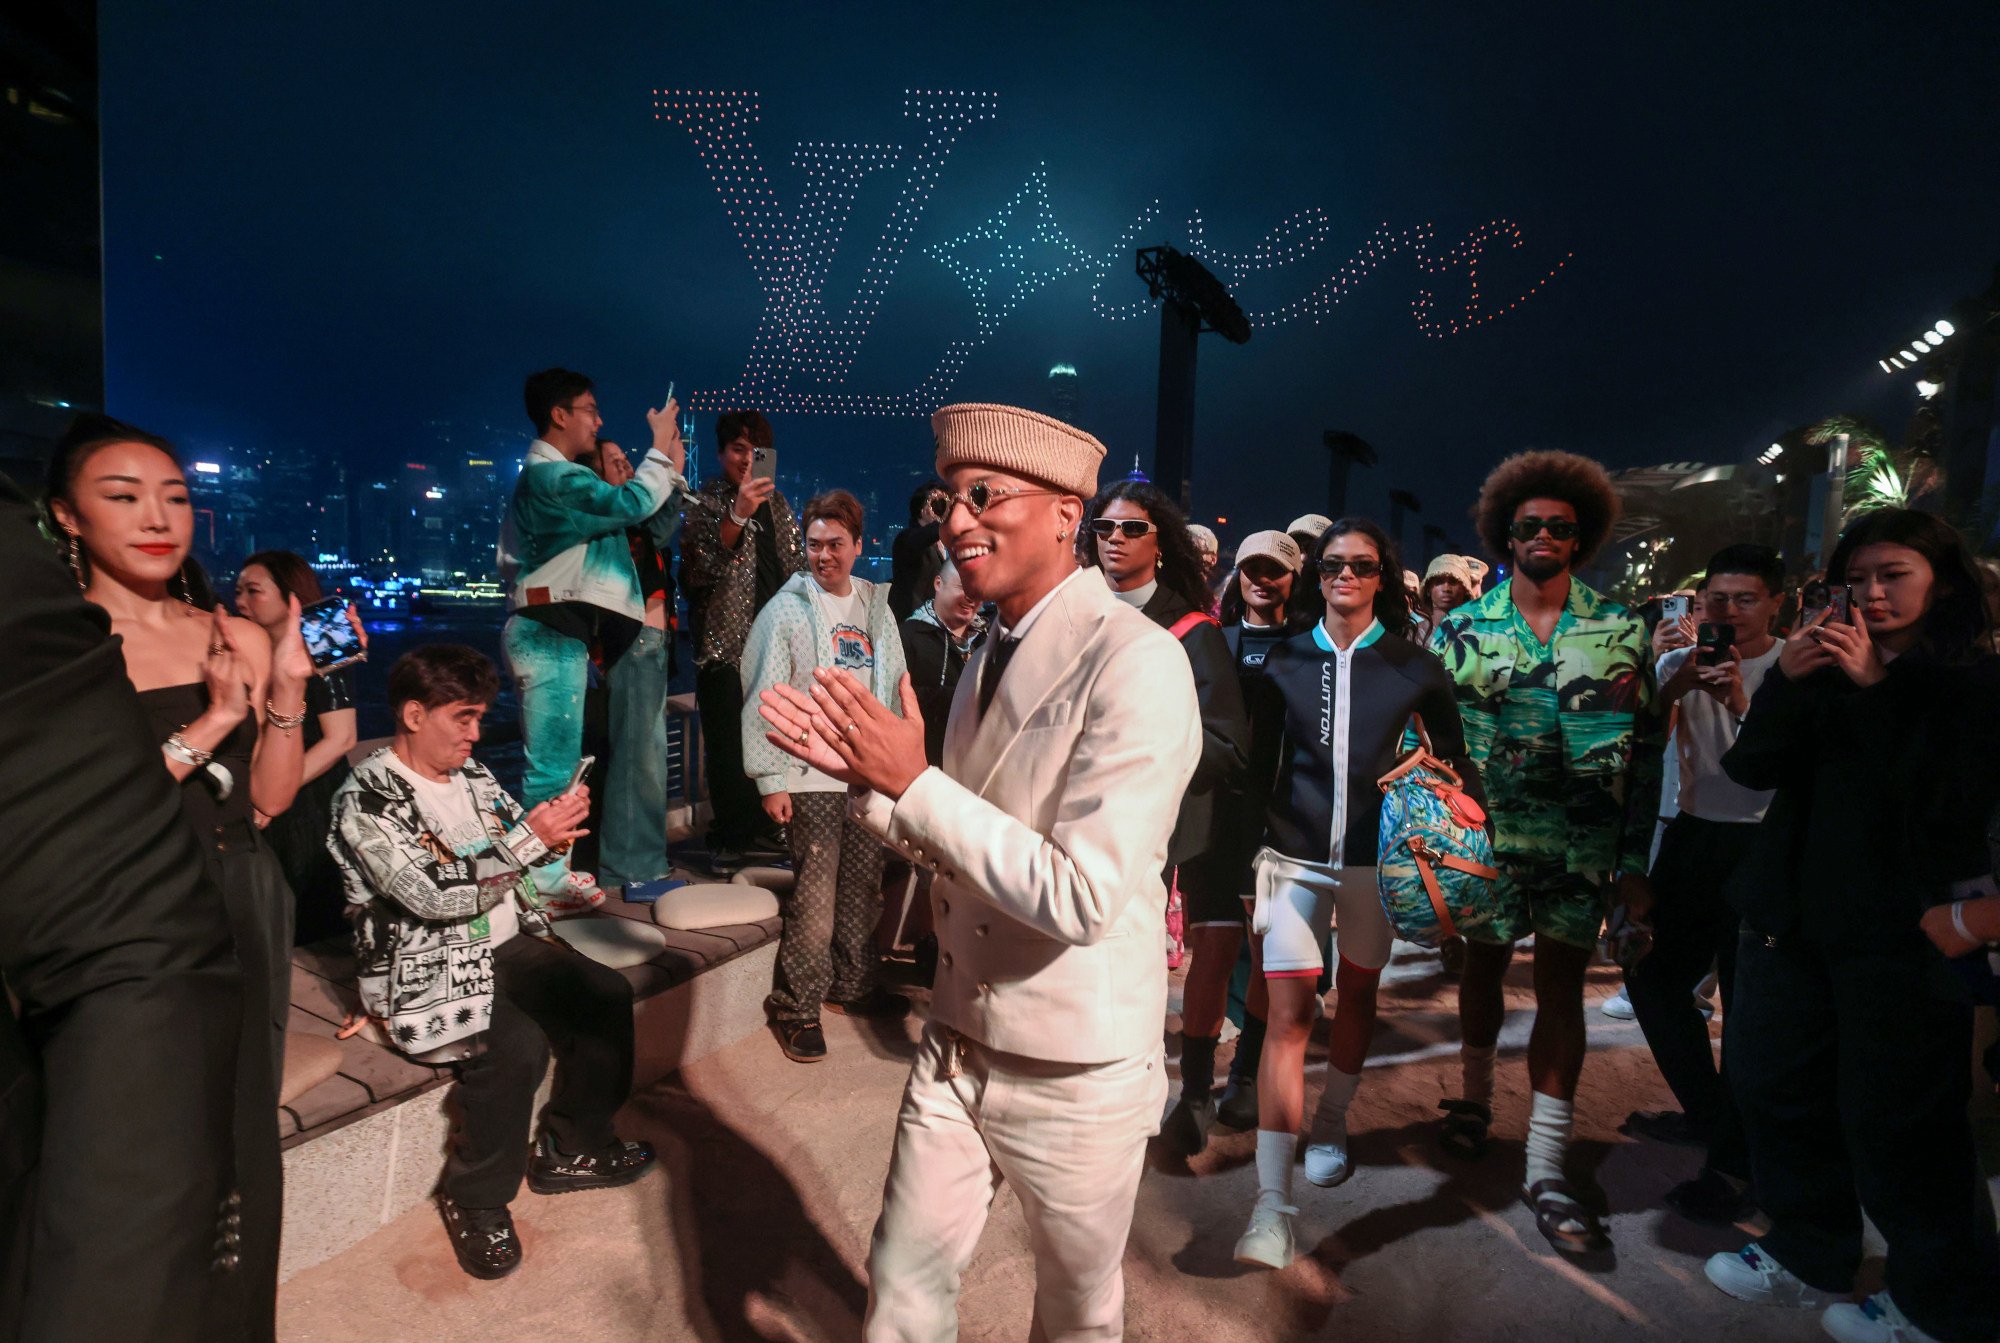 Giám đốc sáng tạo thời trang nam Louis Vuitton Pharrell Williams (giữa đeo kính) với các người mẫu sau lưng và nền trời là drone xếp hình biểu tượng LV tại buổi diễn. Ảnh: Jonathan Wong